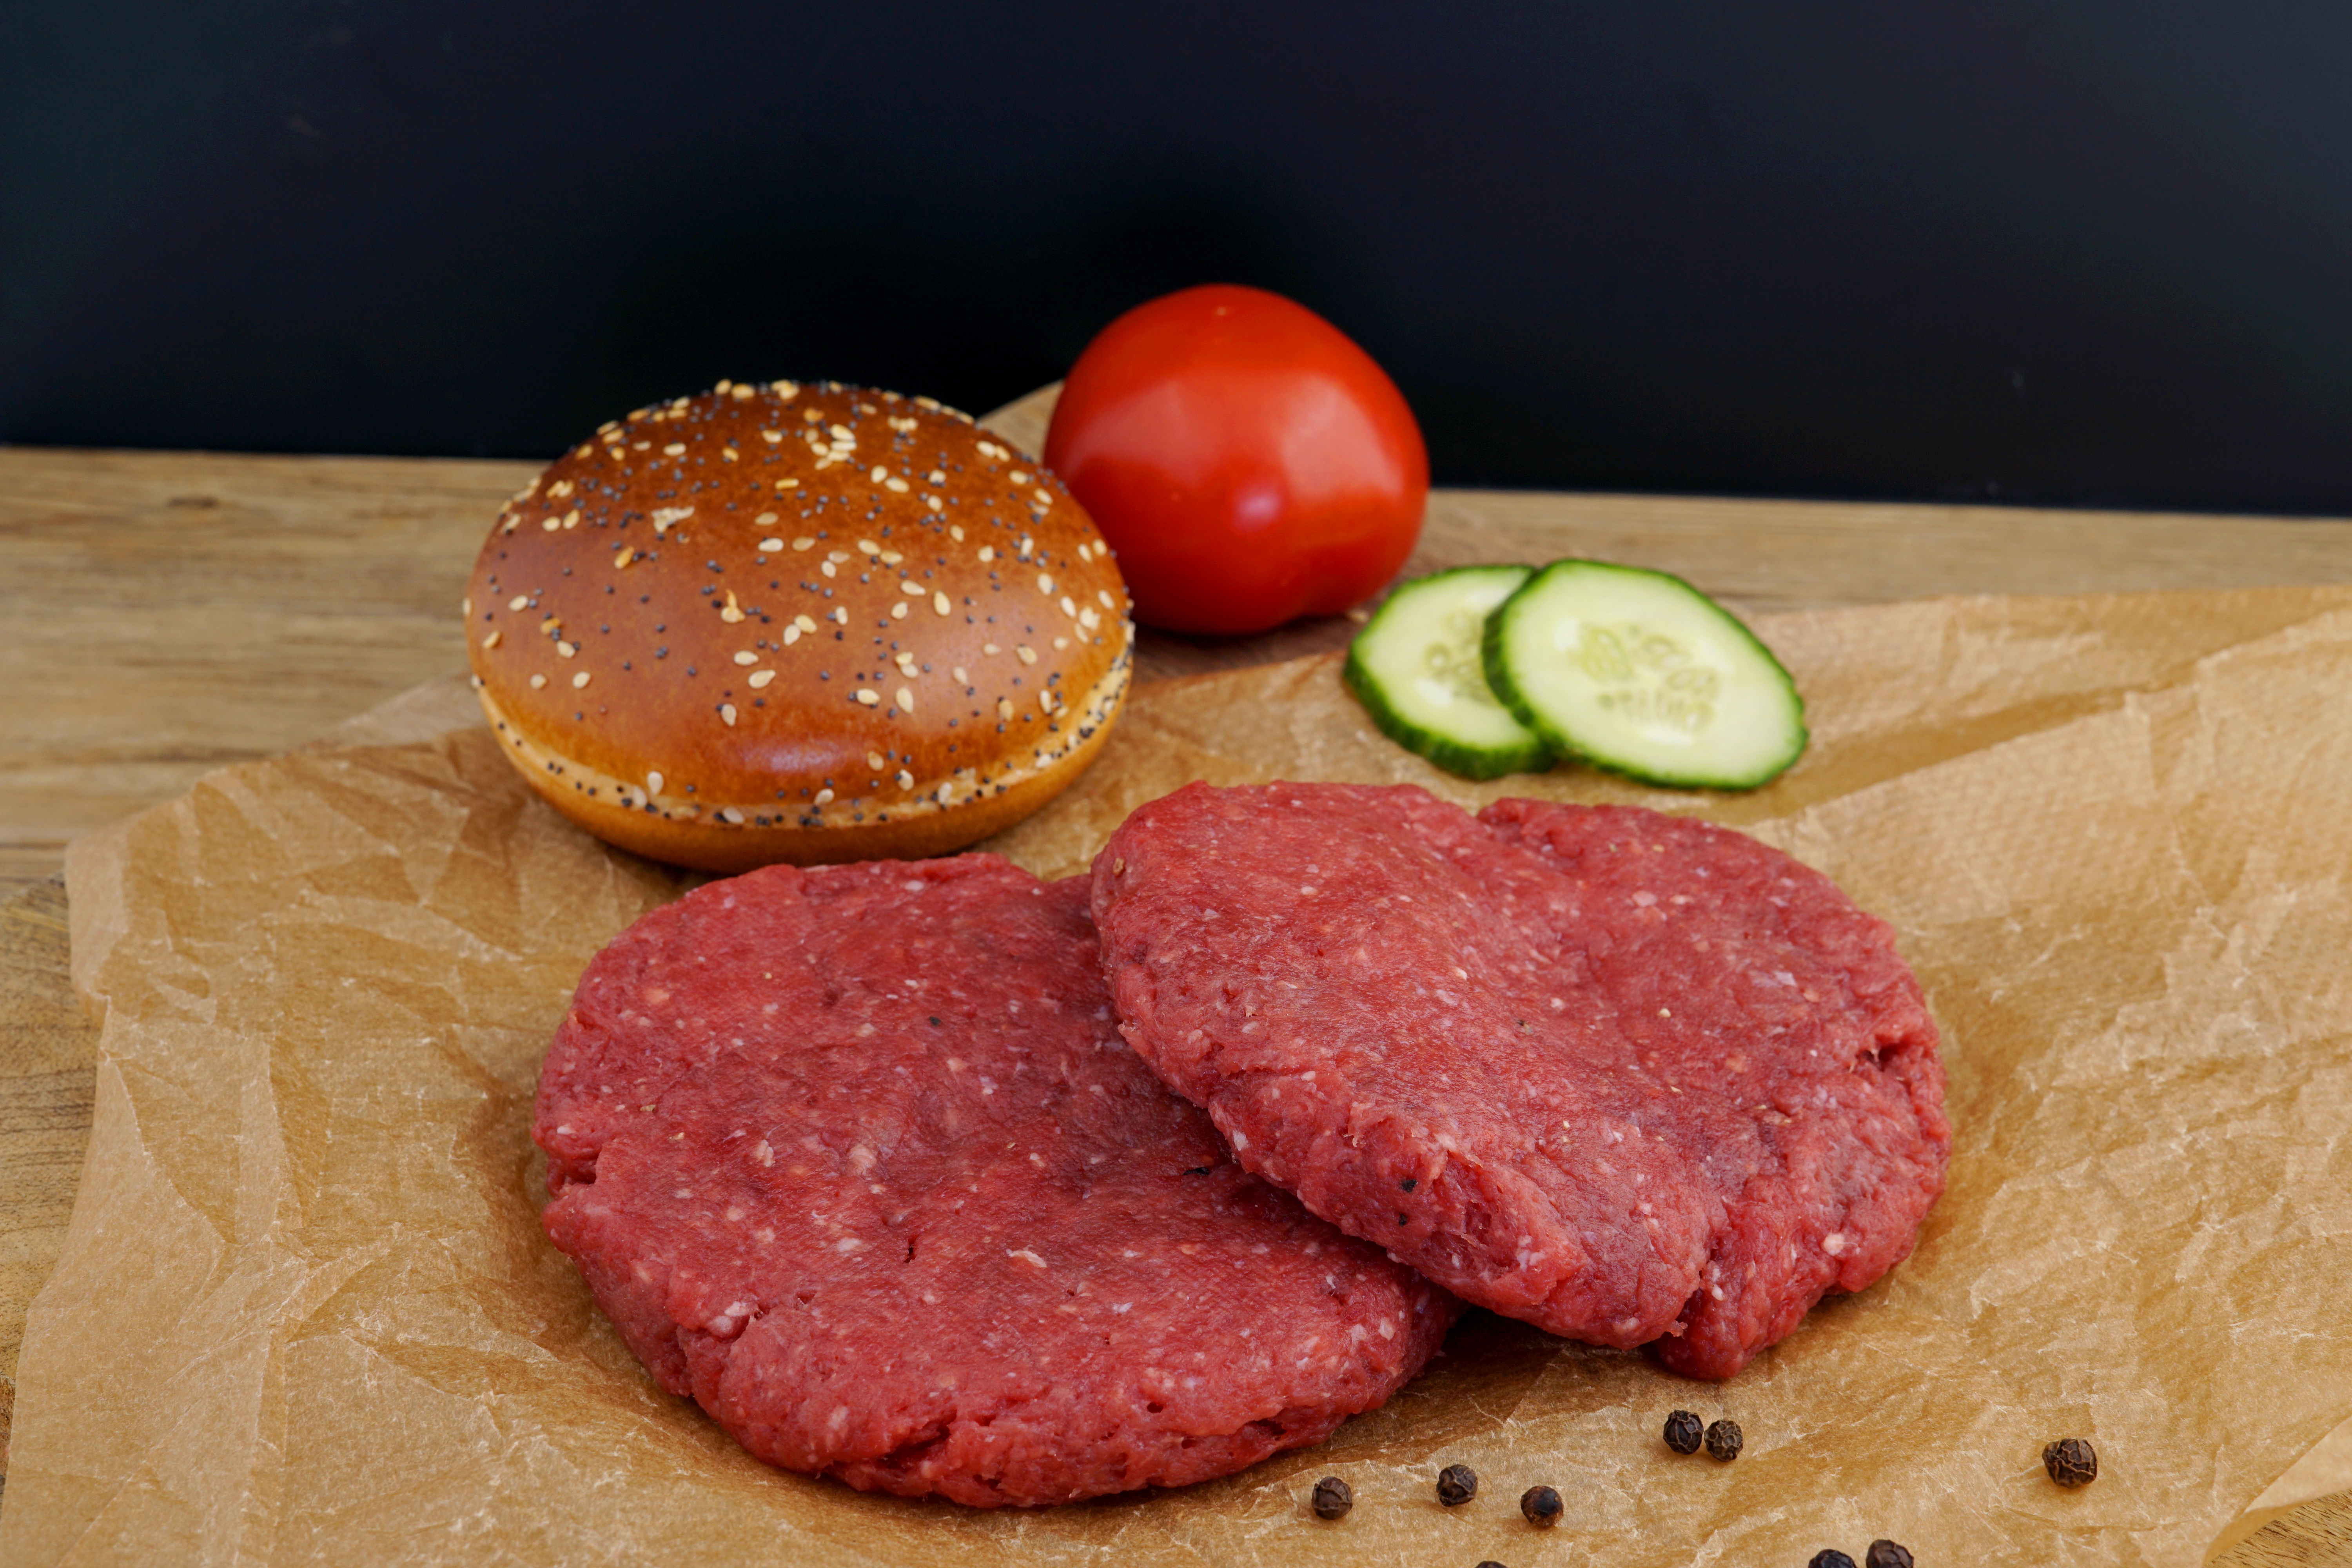 Rezept, Gericht von Develey: Burgerpatty mit verschiedenen Saucen